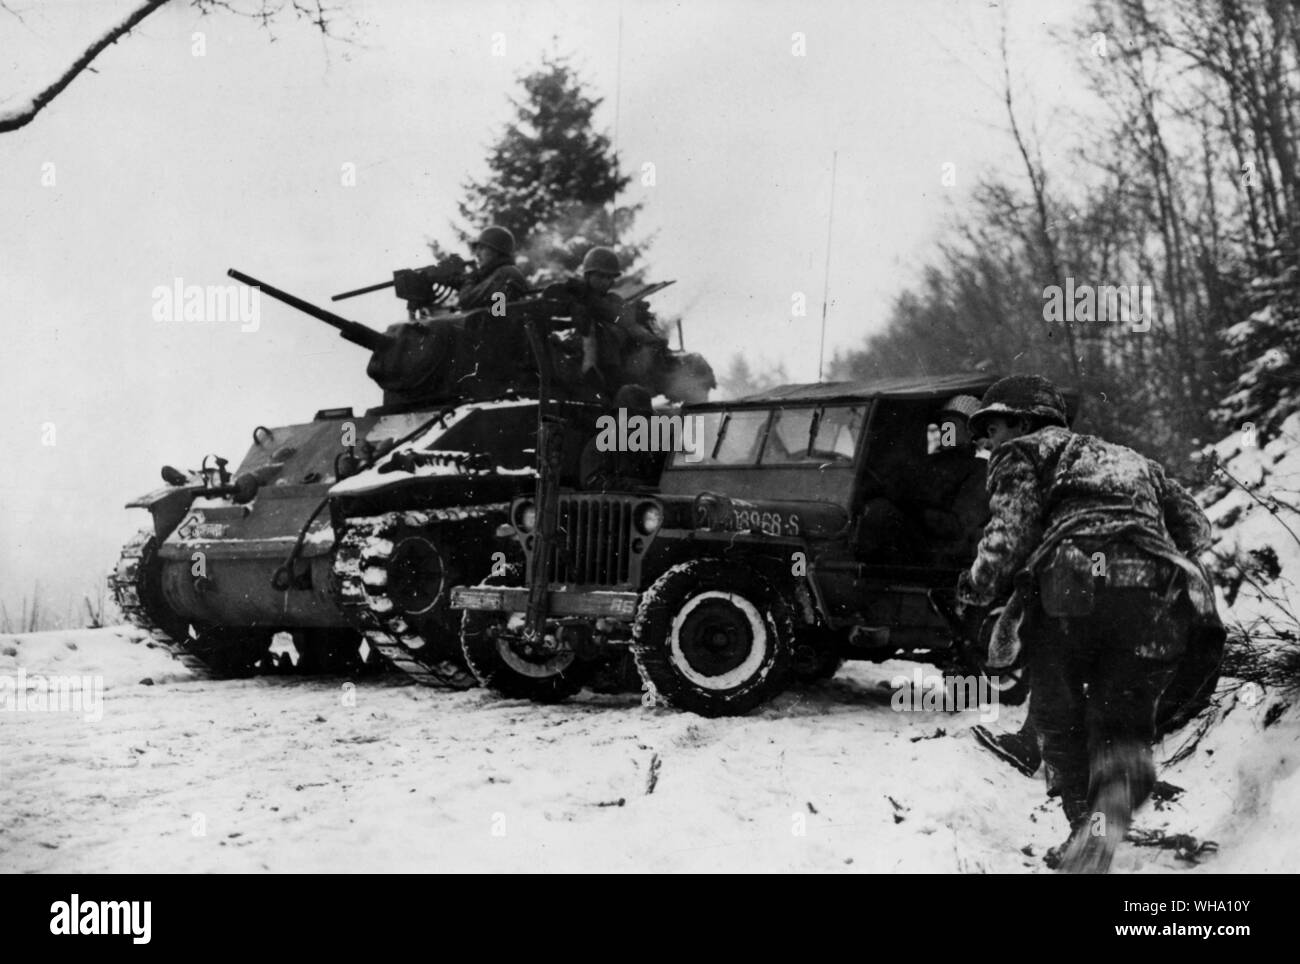 WW2: Die amerikanischen Truppen wieder ein Jeep, die zuvor unter dem Deckmantel der Sherman Panzer aufgegeben, Luxemburg (Ardennen Kampagne). Dez. 1944/45. Stockfoto